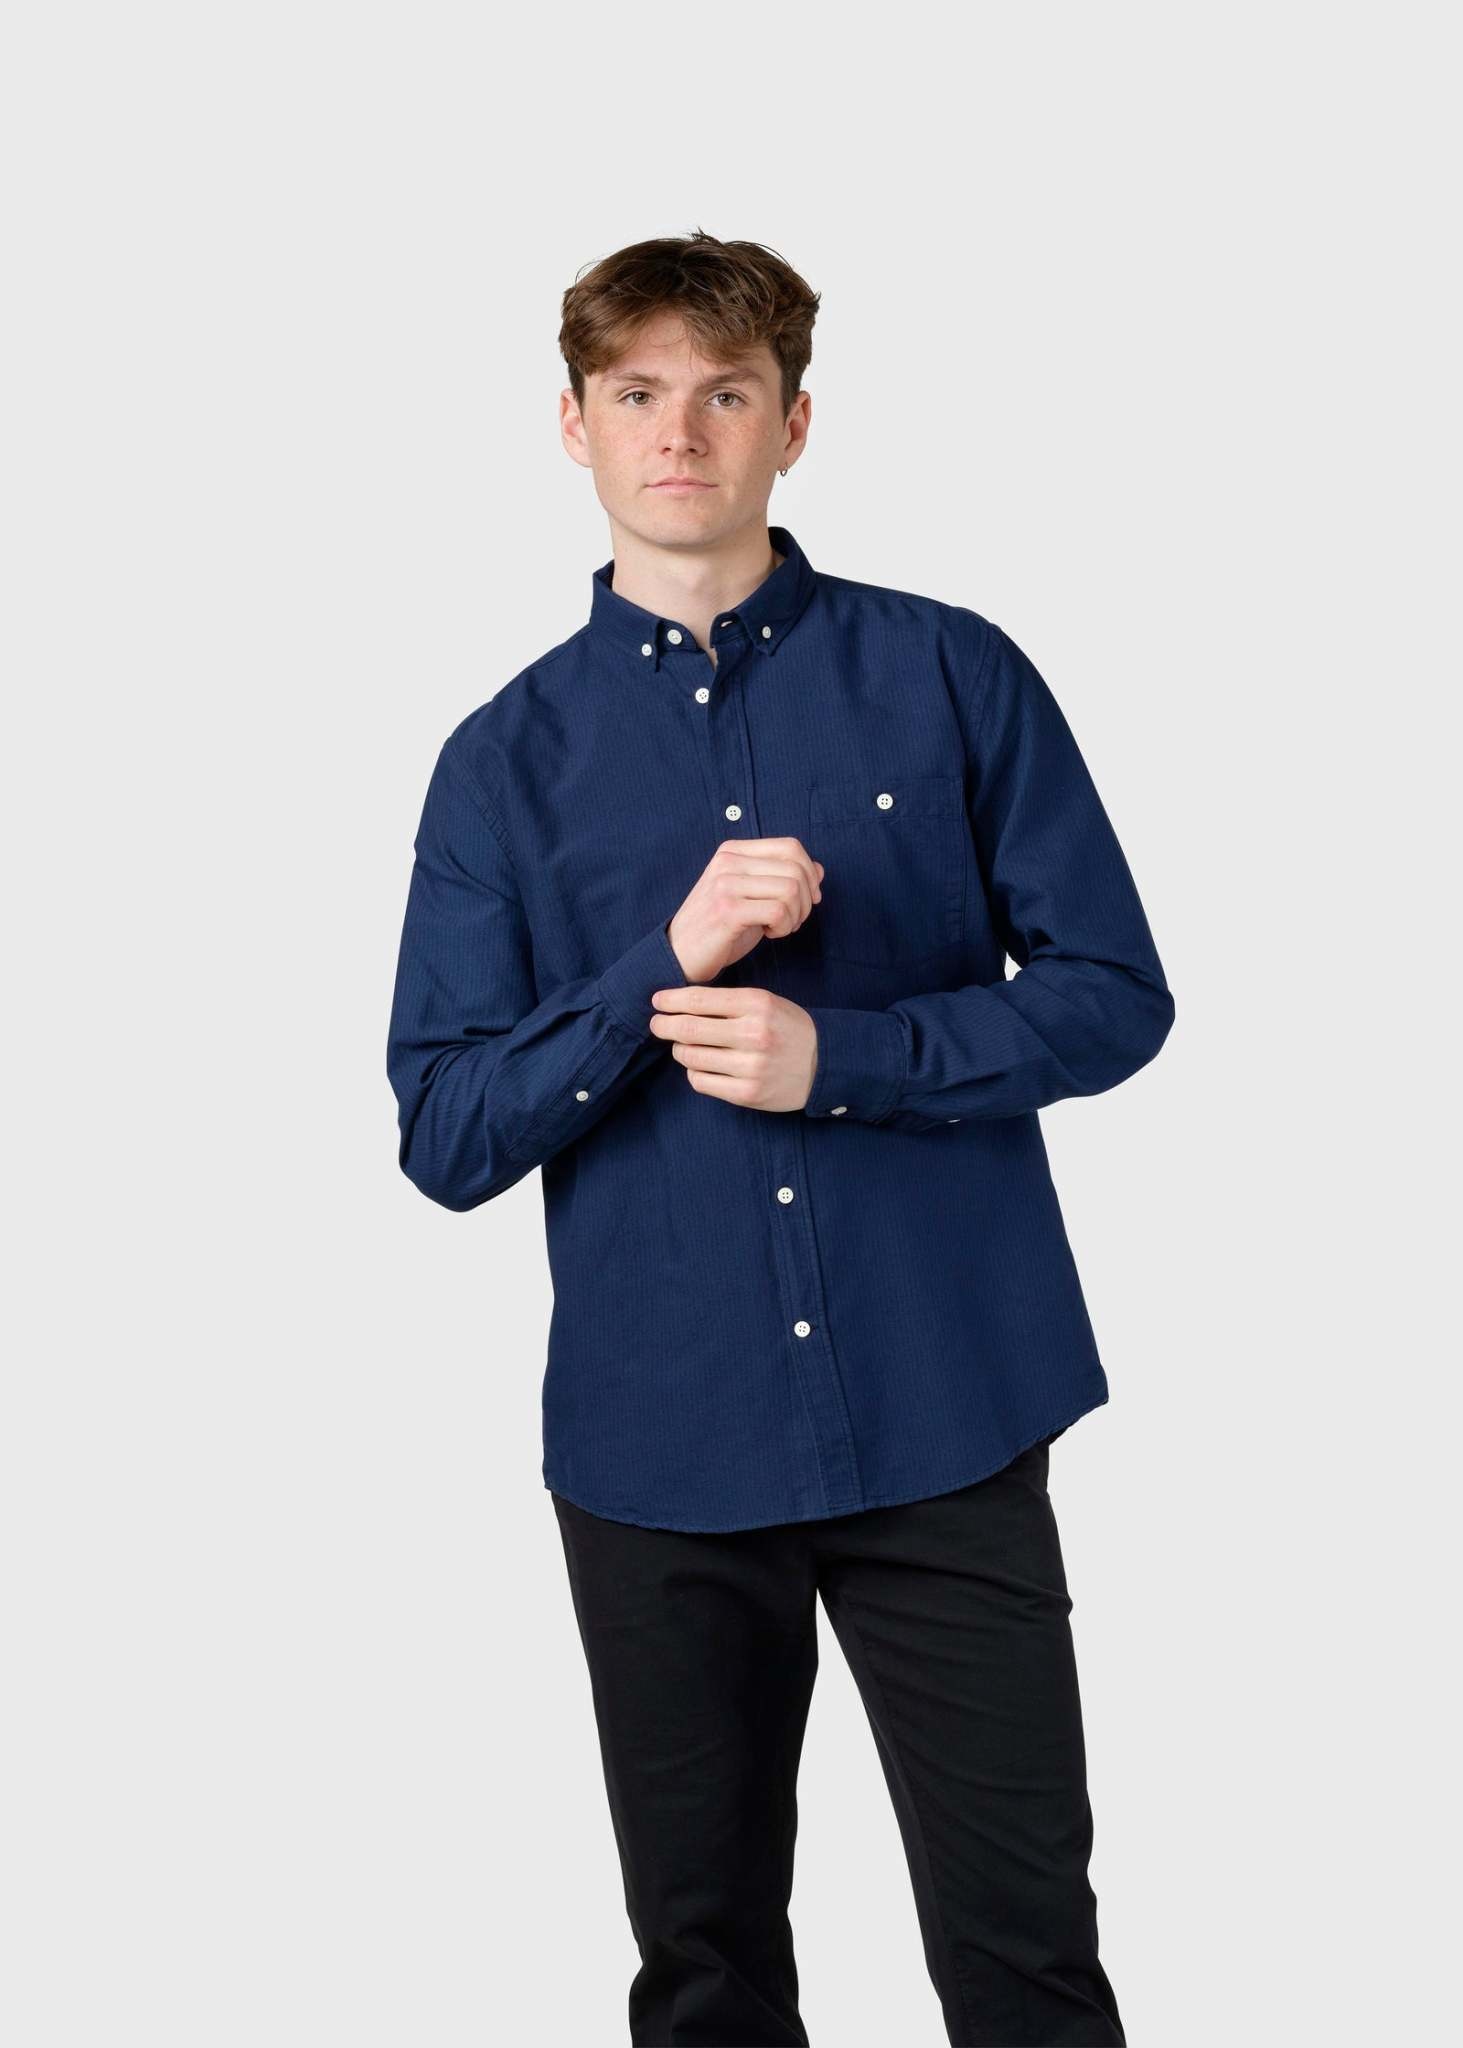 Klitmøller Klitmøller, Benjamin Striped Shirt, white/navy/ocean, XL